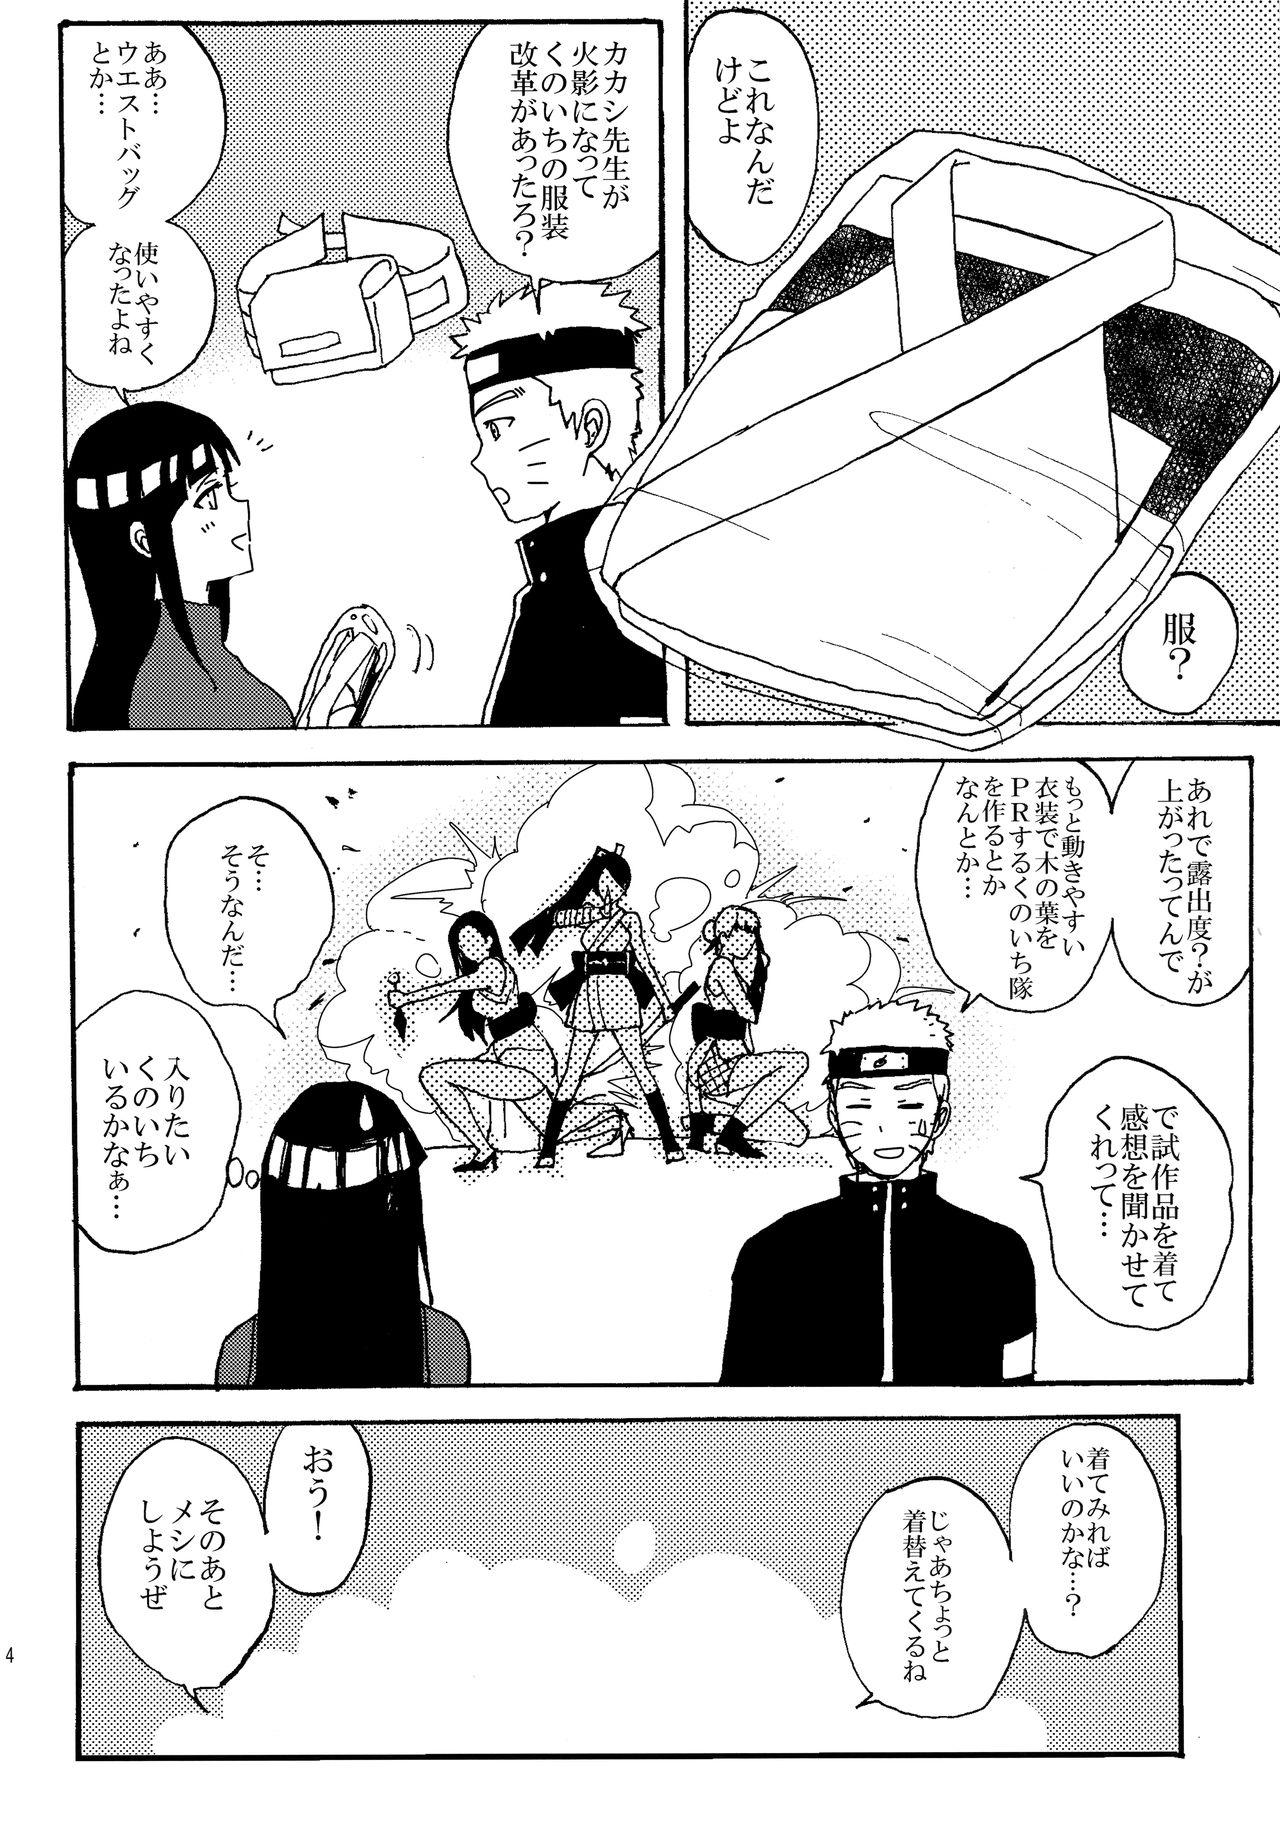 Strapon Shinkon Hinata no Kunoichi Cosplay datteba yo! - Naruto Doggystyle Porn - Page 3